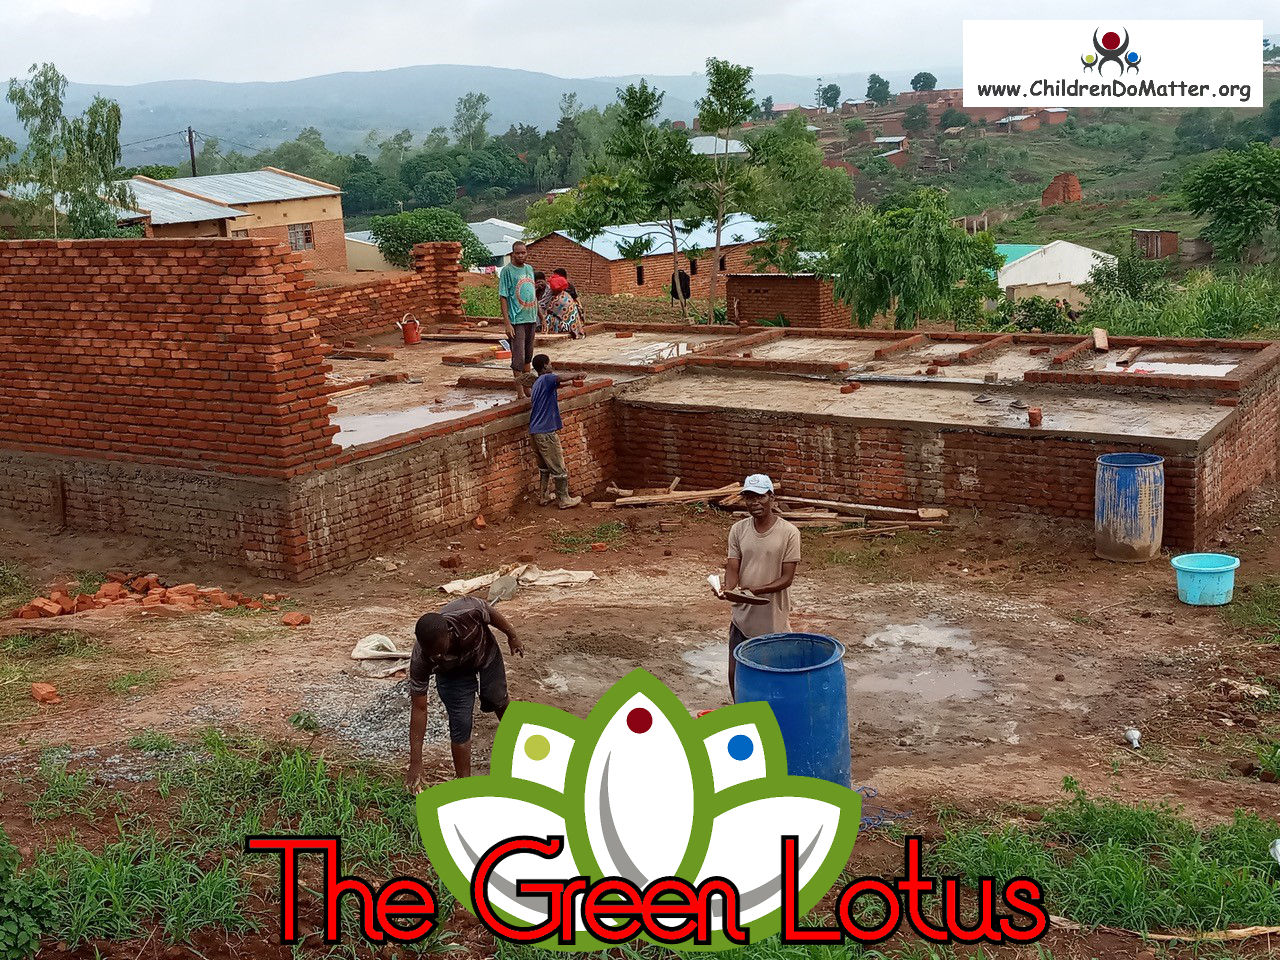 costruzione dell'orfanotrofio casa di accoglienza the green lotus a blantyre malawi - children do matter - 11